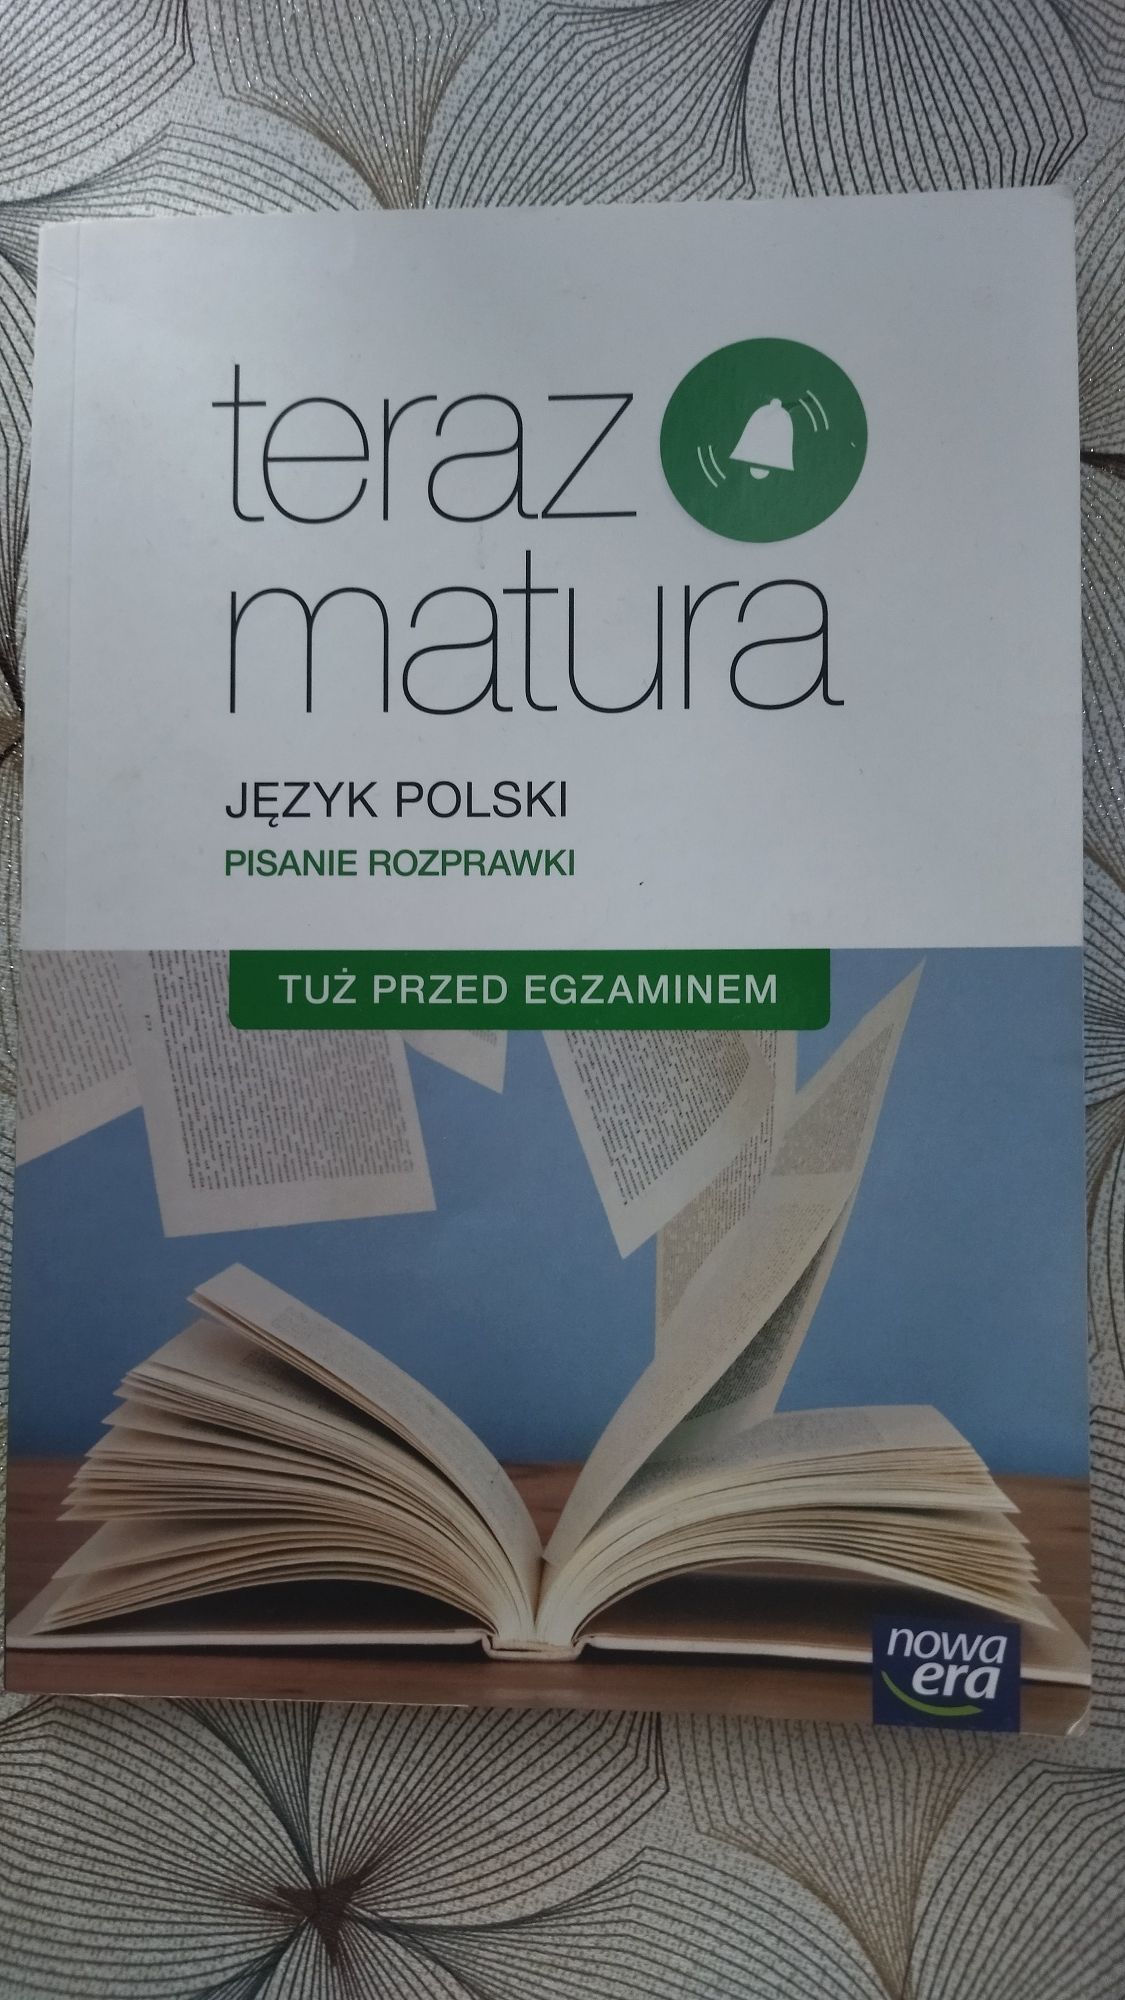 Książka "Teraz matura" język polski